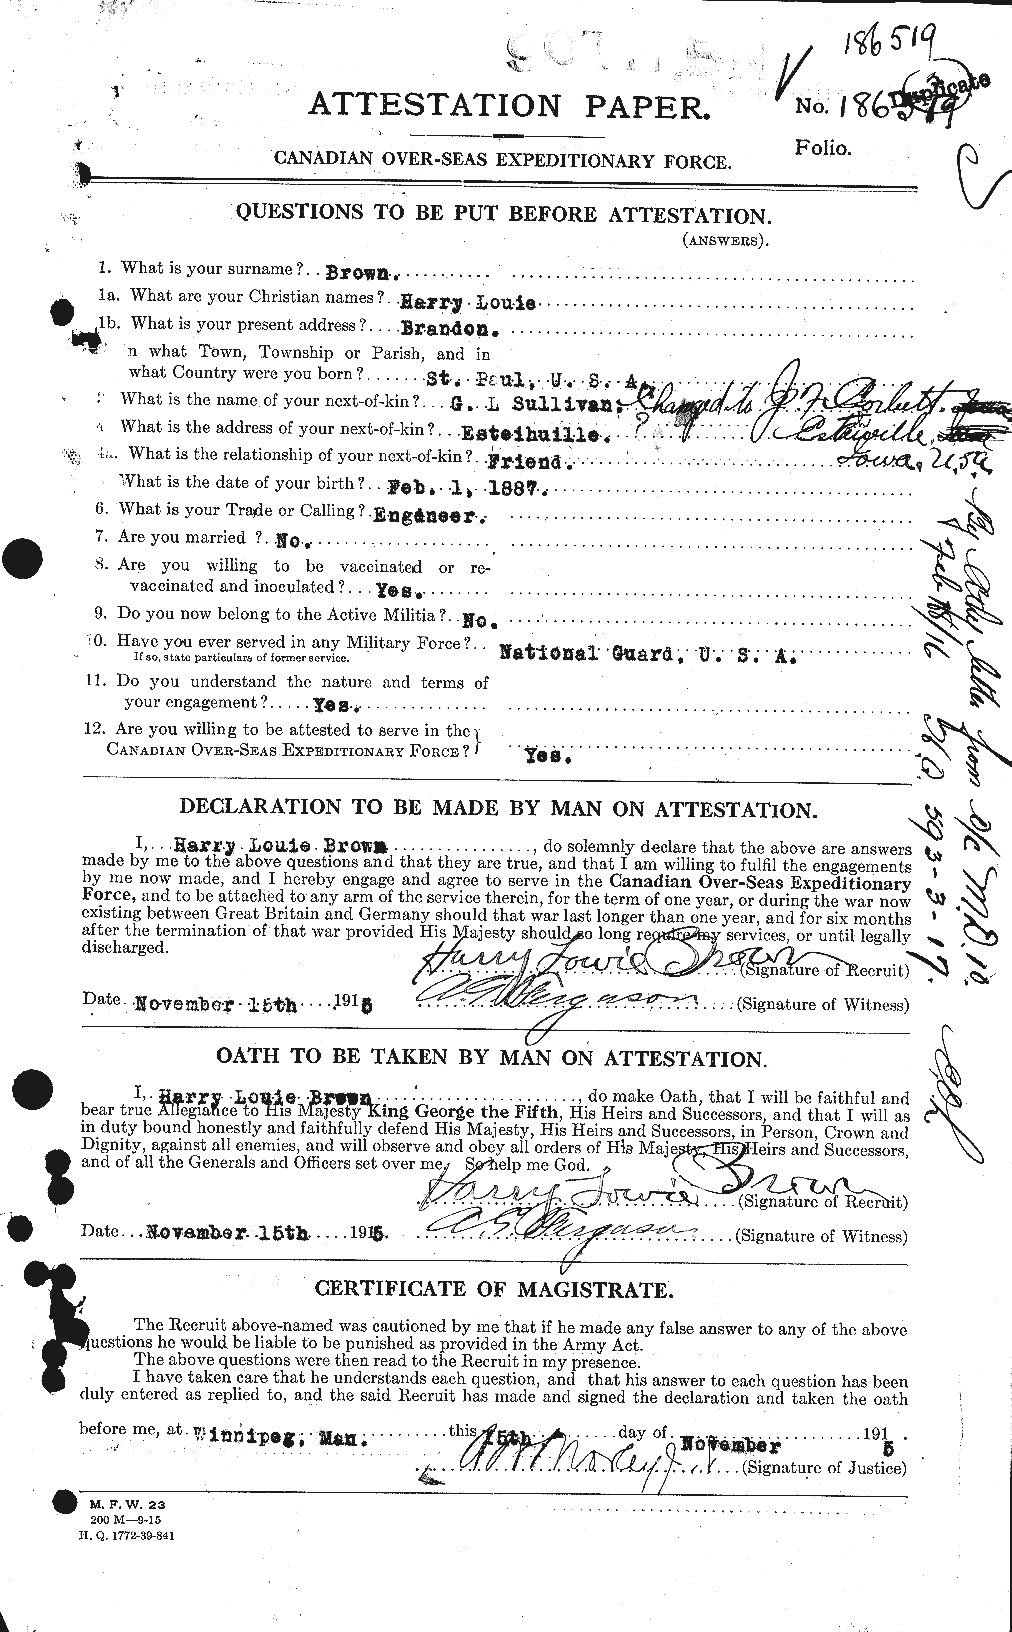 Dossiers du Personnel de la Première Guerre mondiale - CEC 265459a